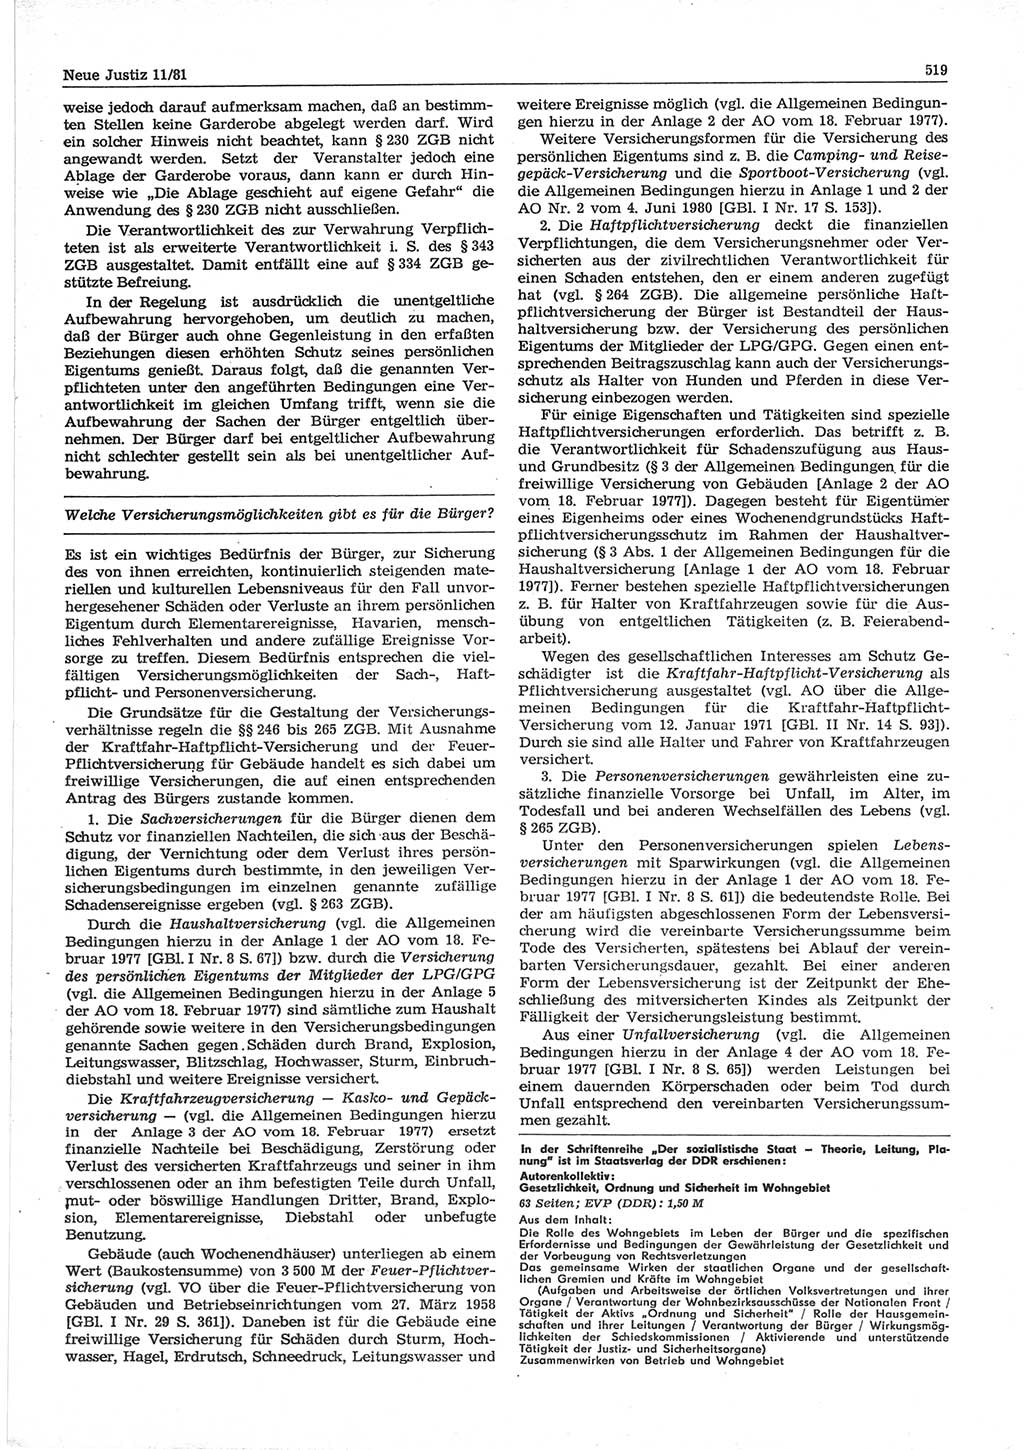 Neue Justiz (NJ), Zeitschrift für sozialistisches Recht und Gesetzlichkeit [Deutsche Demokratische Republik (DDR)], 35. Jahrgang 1981, Seite 519 (NJ DDR 1981, S. 519)